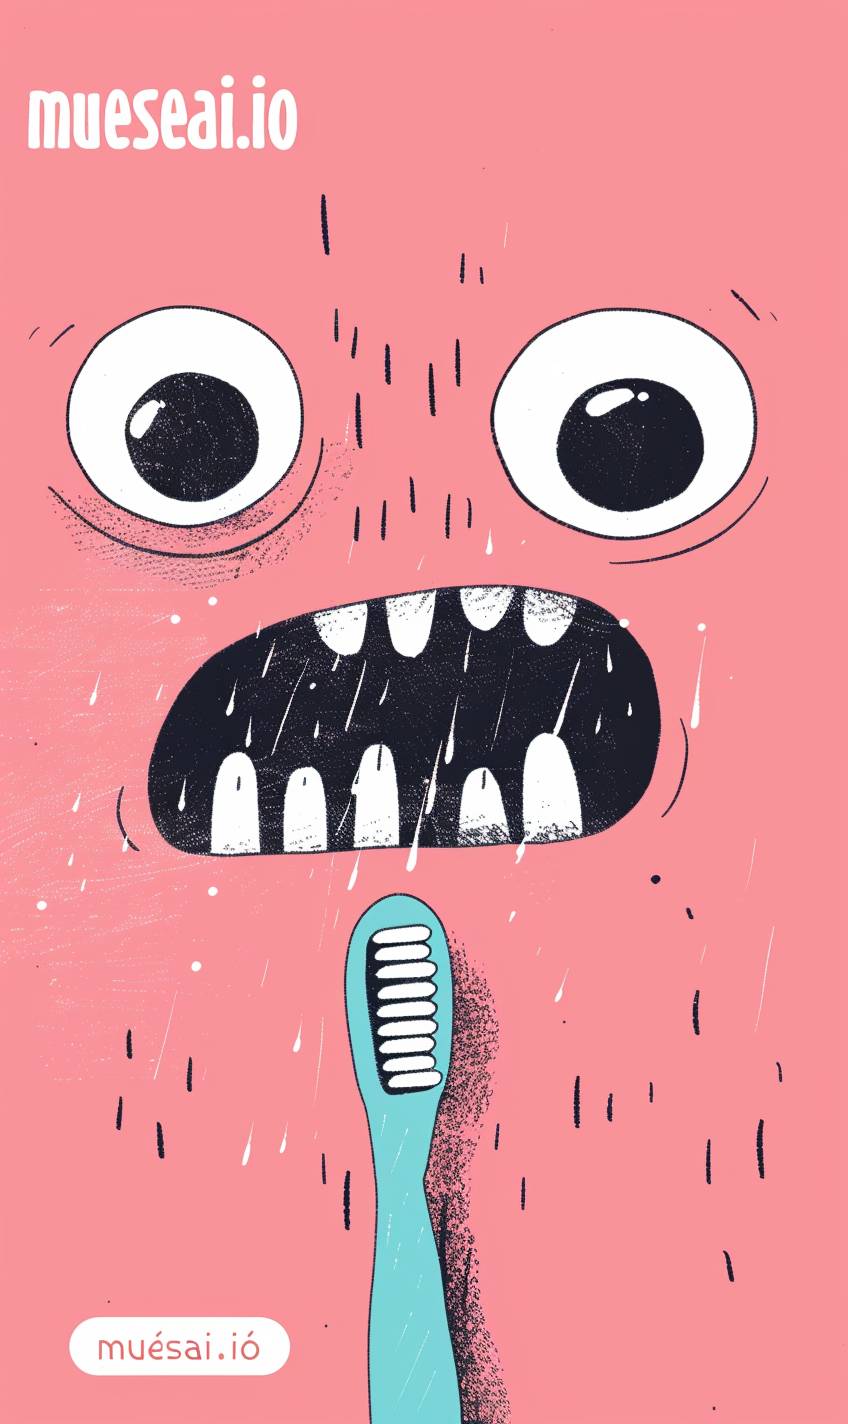 Gemma Correllのスタイルで、奇抜なキャラクターデザインとフラットでパステルカラーのスタイルで、極端なクローズアップの2つの黒い目と口に、可愛いピンクの歯ブラシを口にした“mueseai.io”のテキストのシンプルなイラスト。